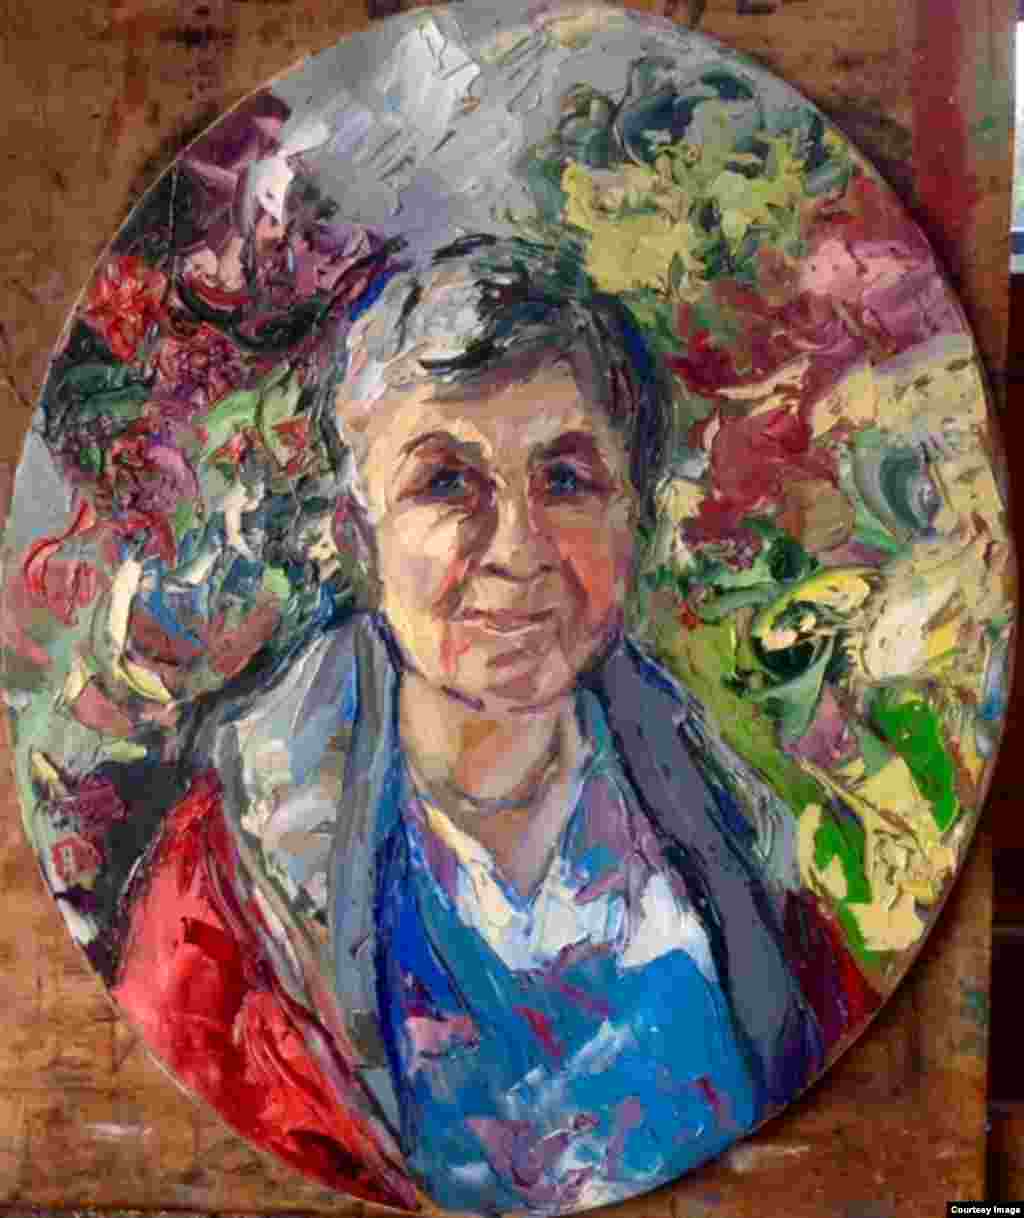 Фаина Васильевна Шестерова (1949). Работала в домоуправлении в Москве. Тихая, молчаливая, добрая.​ 